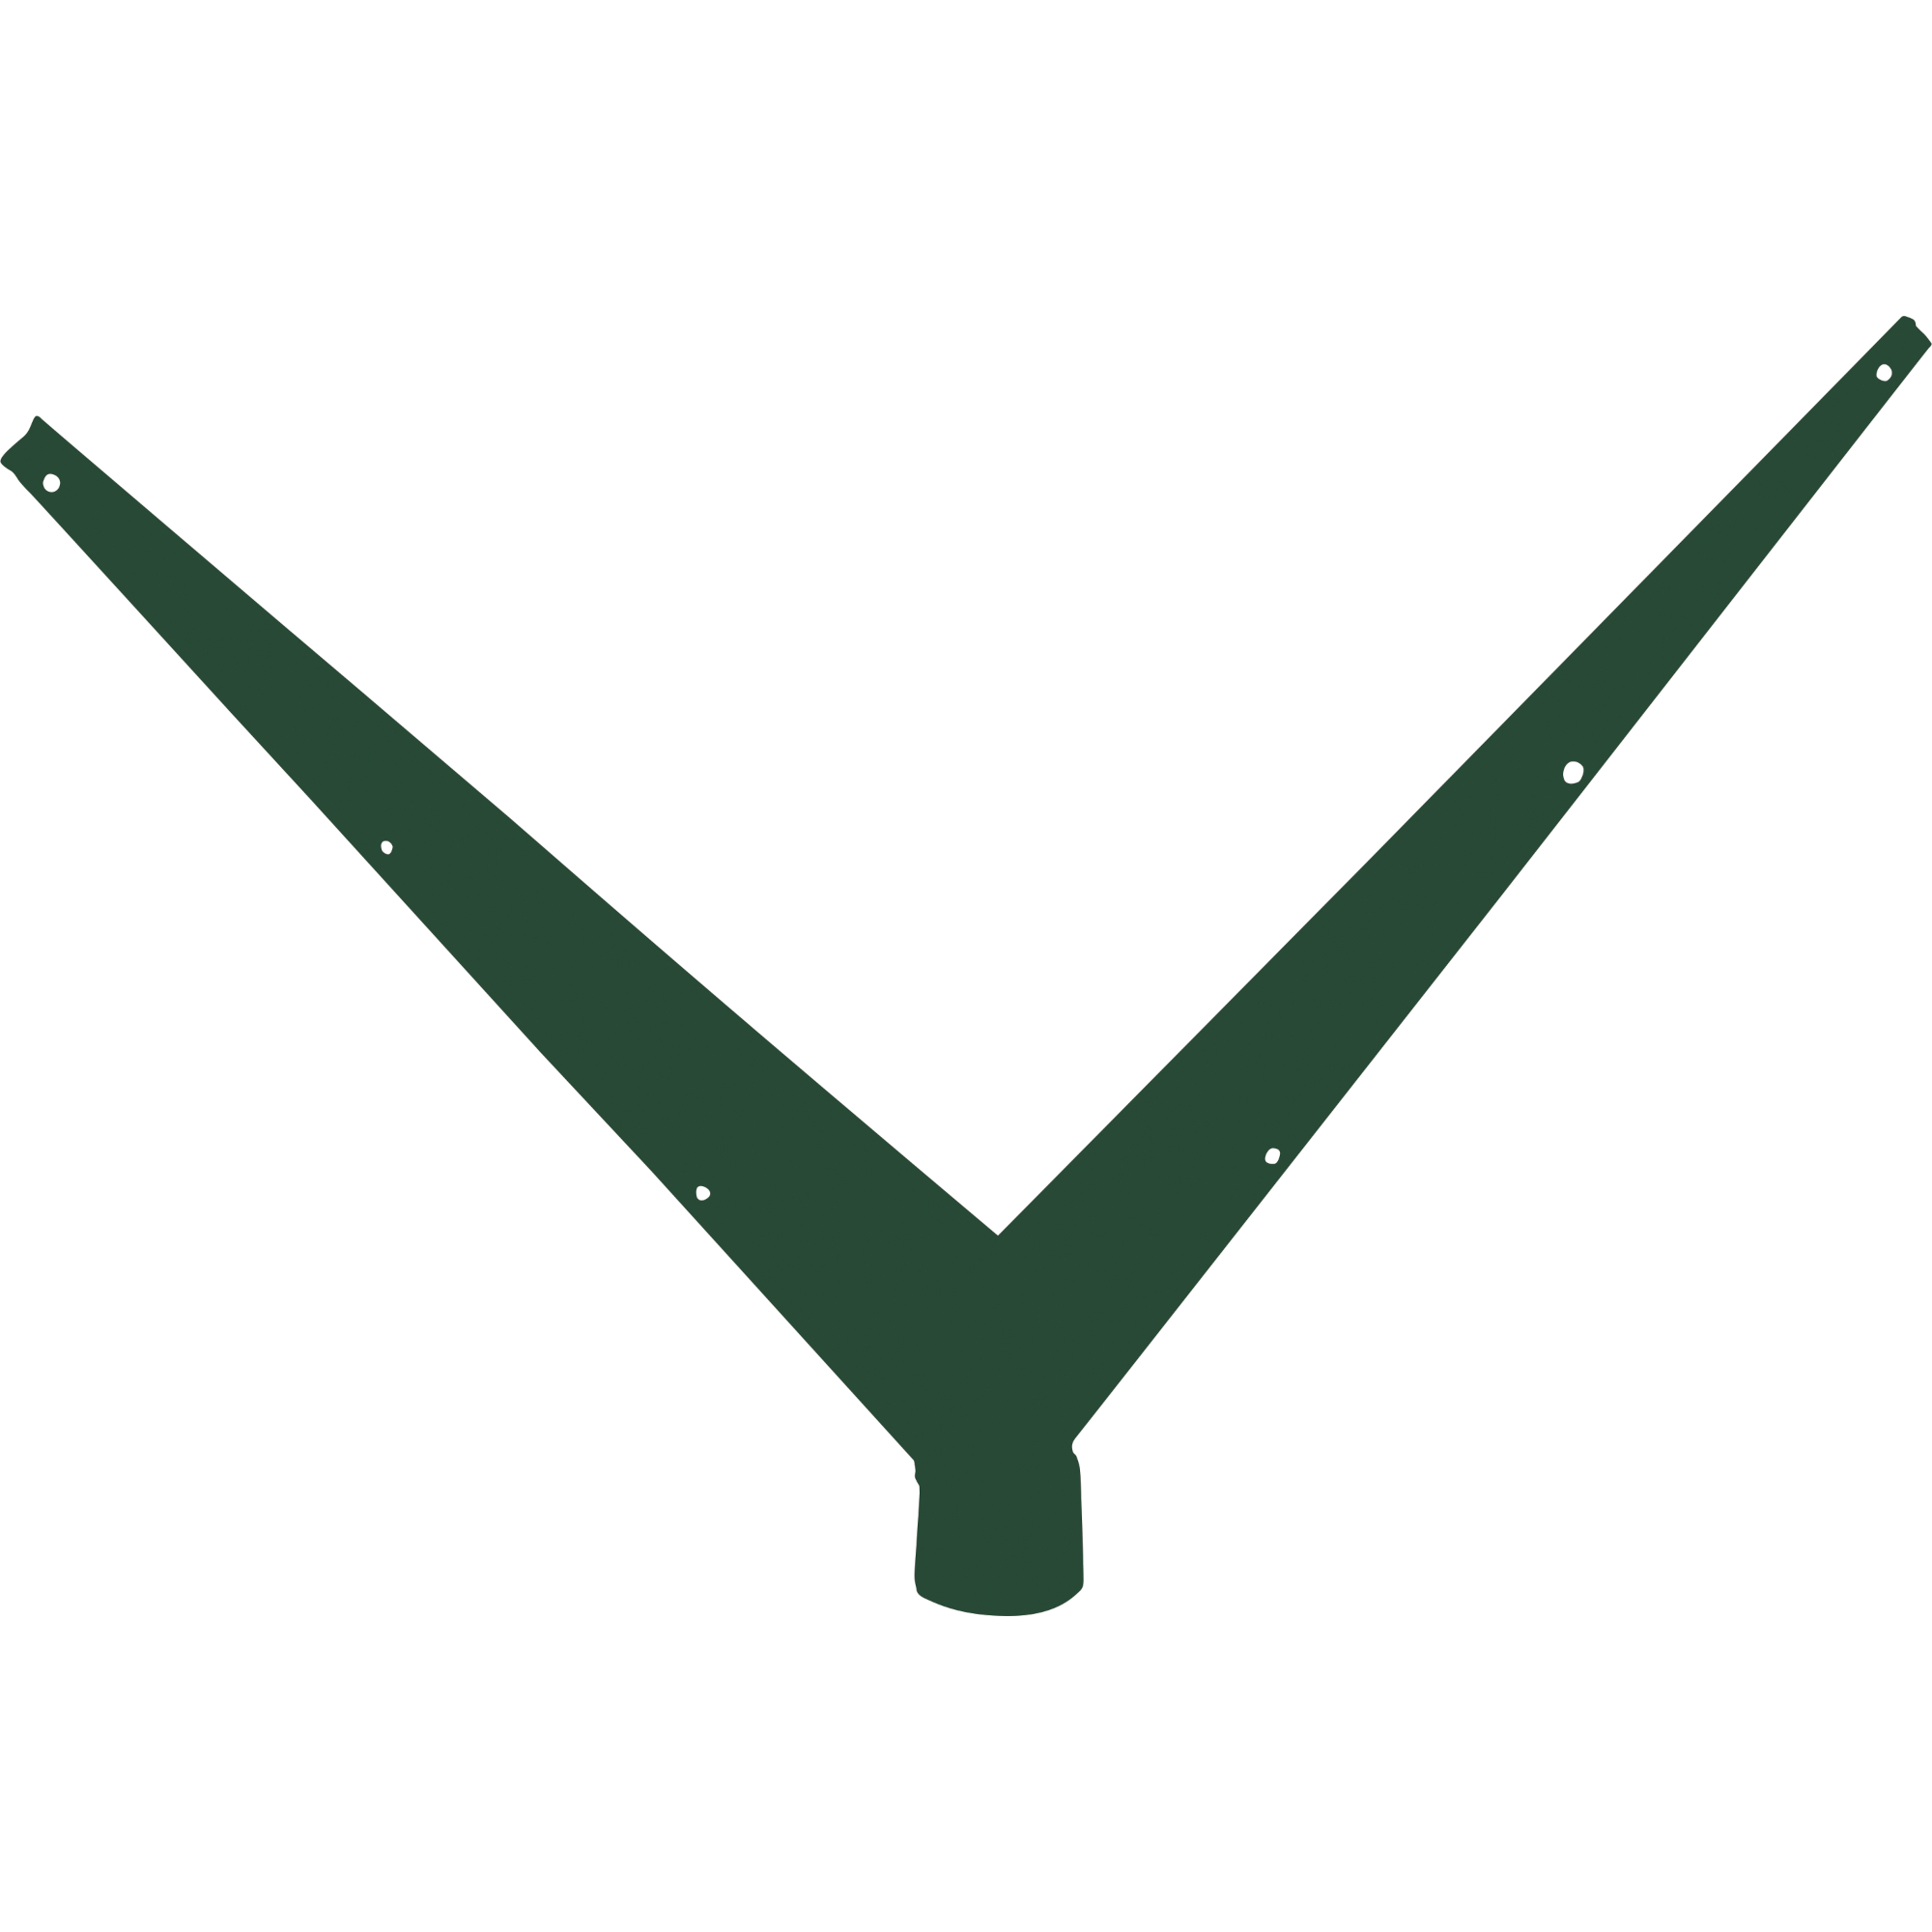 Bavolet oboustranný tvaru V Ideal Zn + PVC zelený na sloupek průměru 48 mm Pilecký